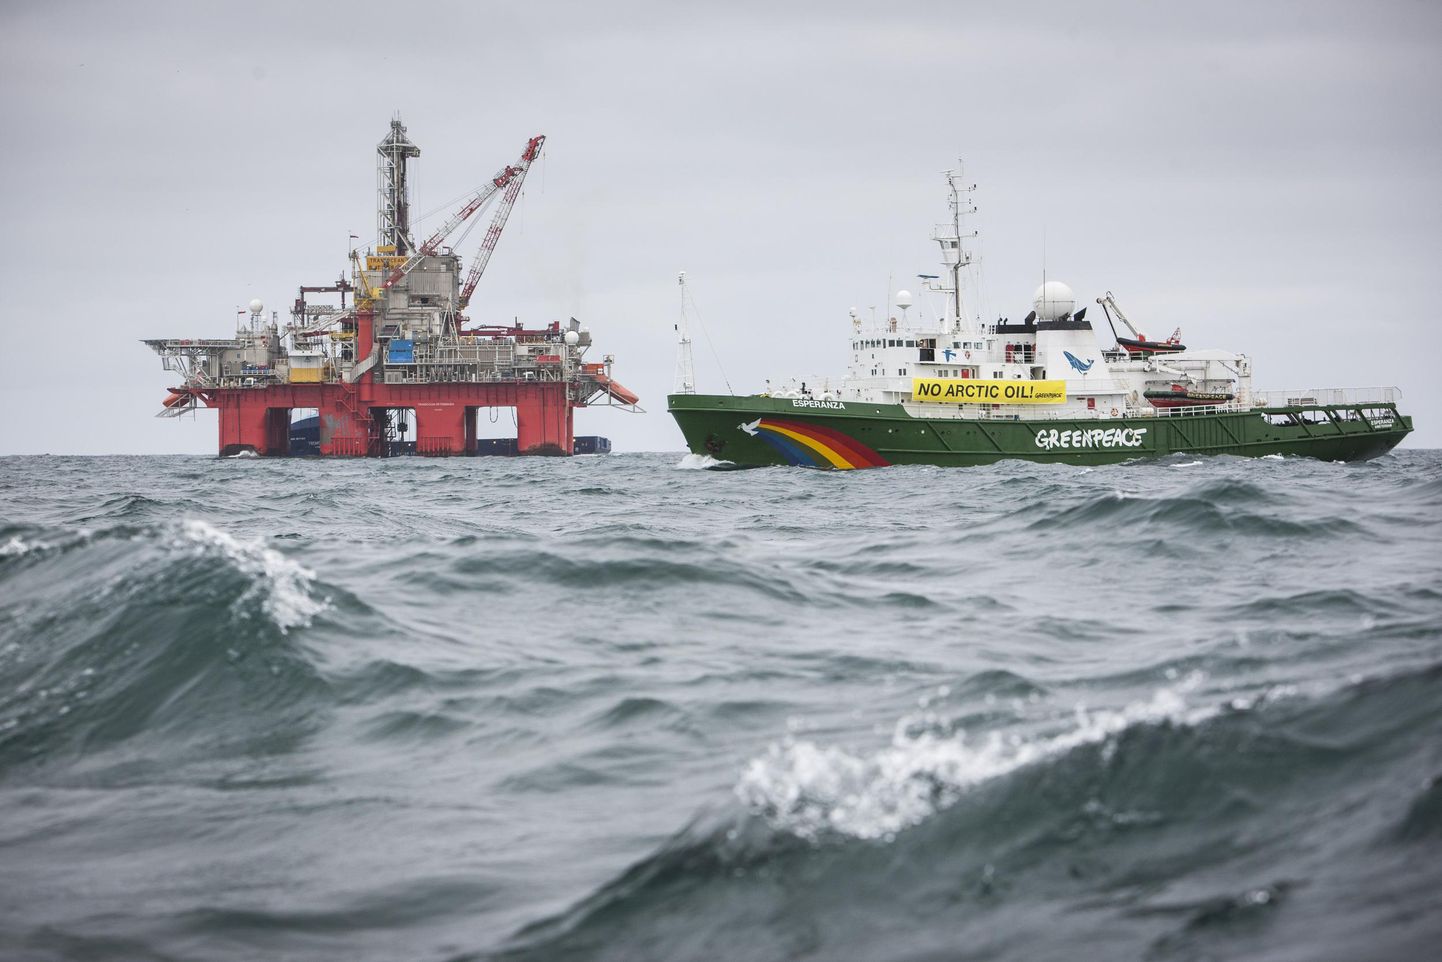 Greenpeace laev Esperanza üritas 2014. aastal takistada naftapuurimist Norra Arktikas. Greenpeace aktivistid ronisid Transocean Spitsbergeni naftaplatvormile, et takistada Statoili tegevuse laiendamist.